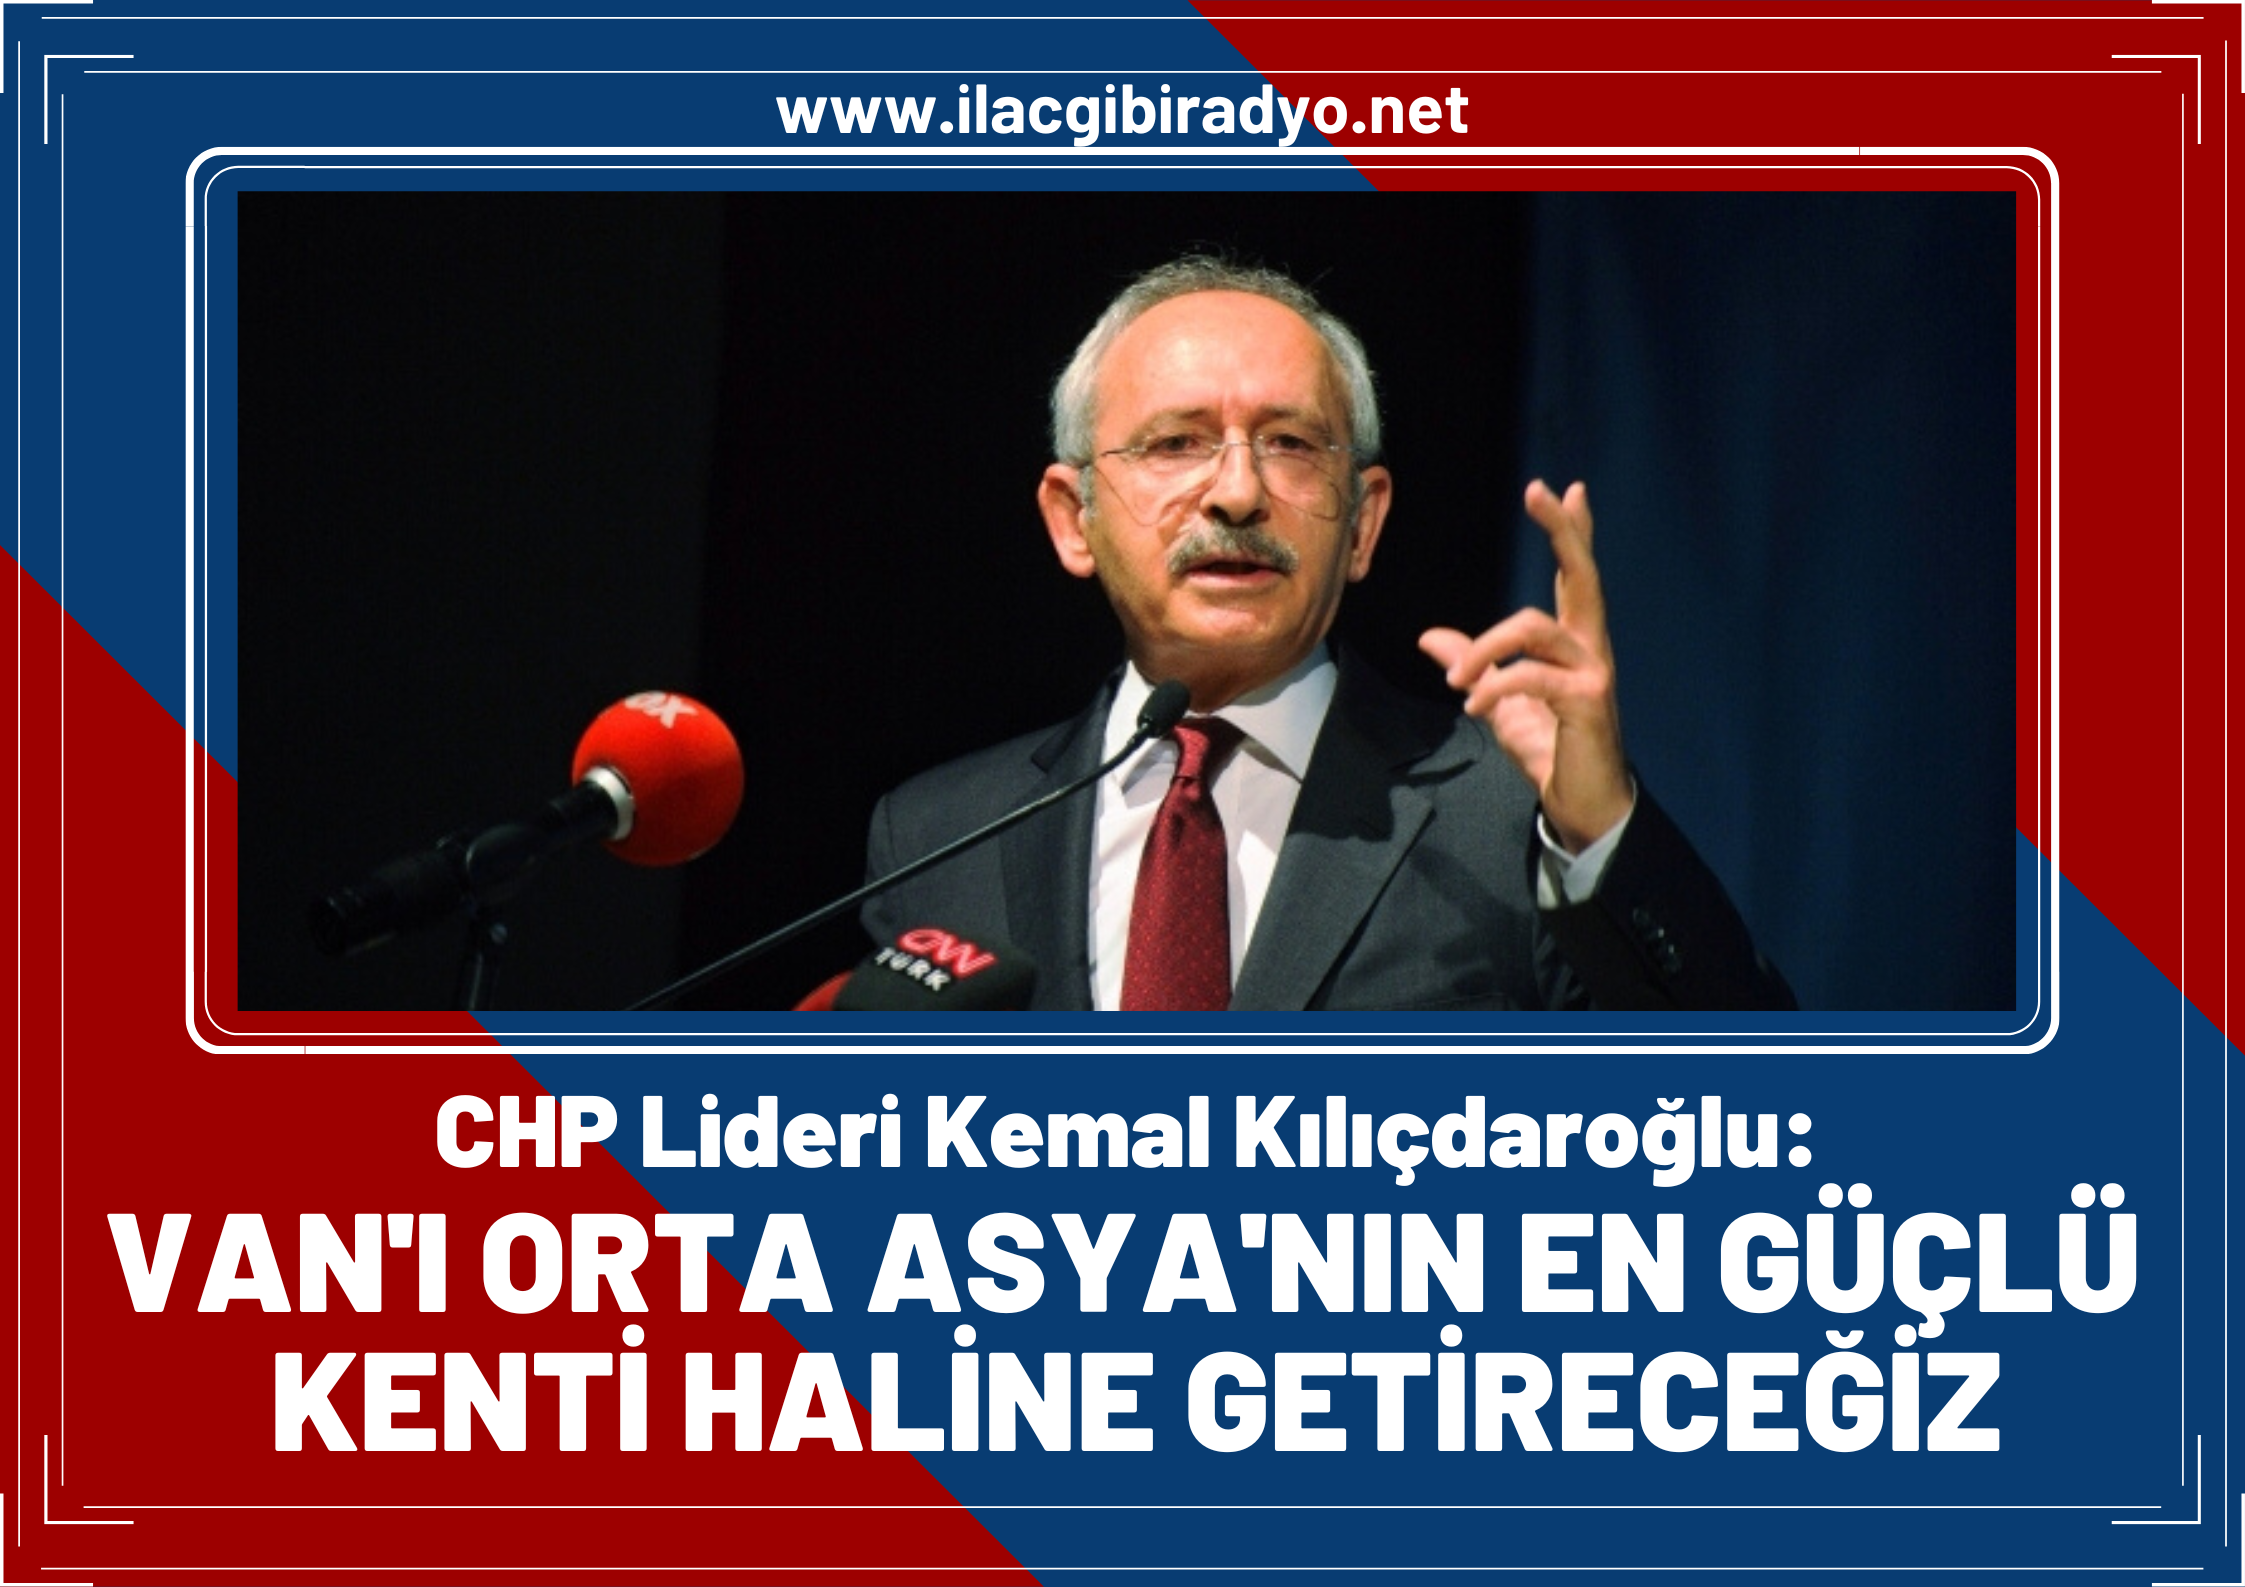 CHP Lideri Kemal Kılıçdaroğlu: Van’ı Orta Asya’nın en güçlü kenti haline getireceğiz!